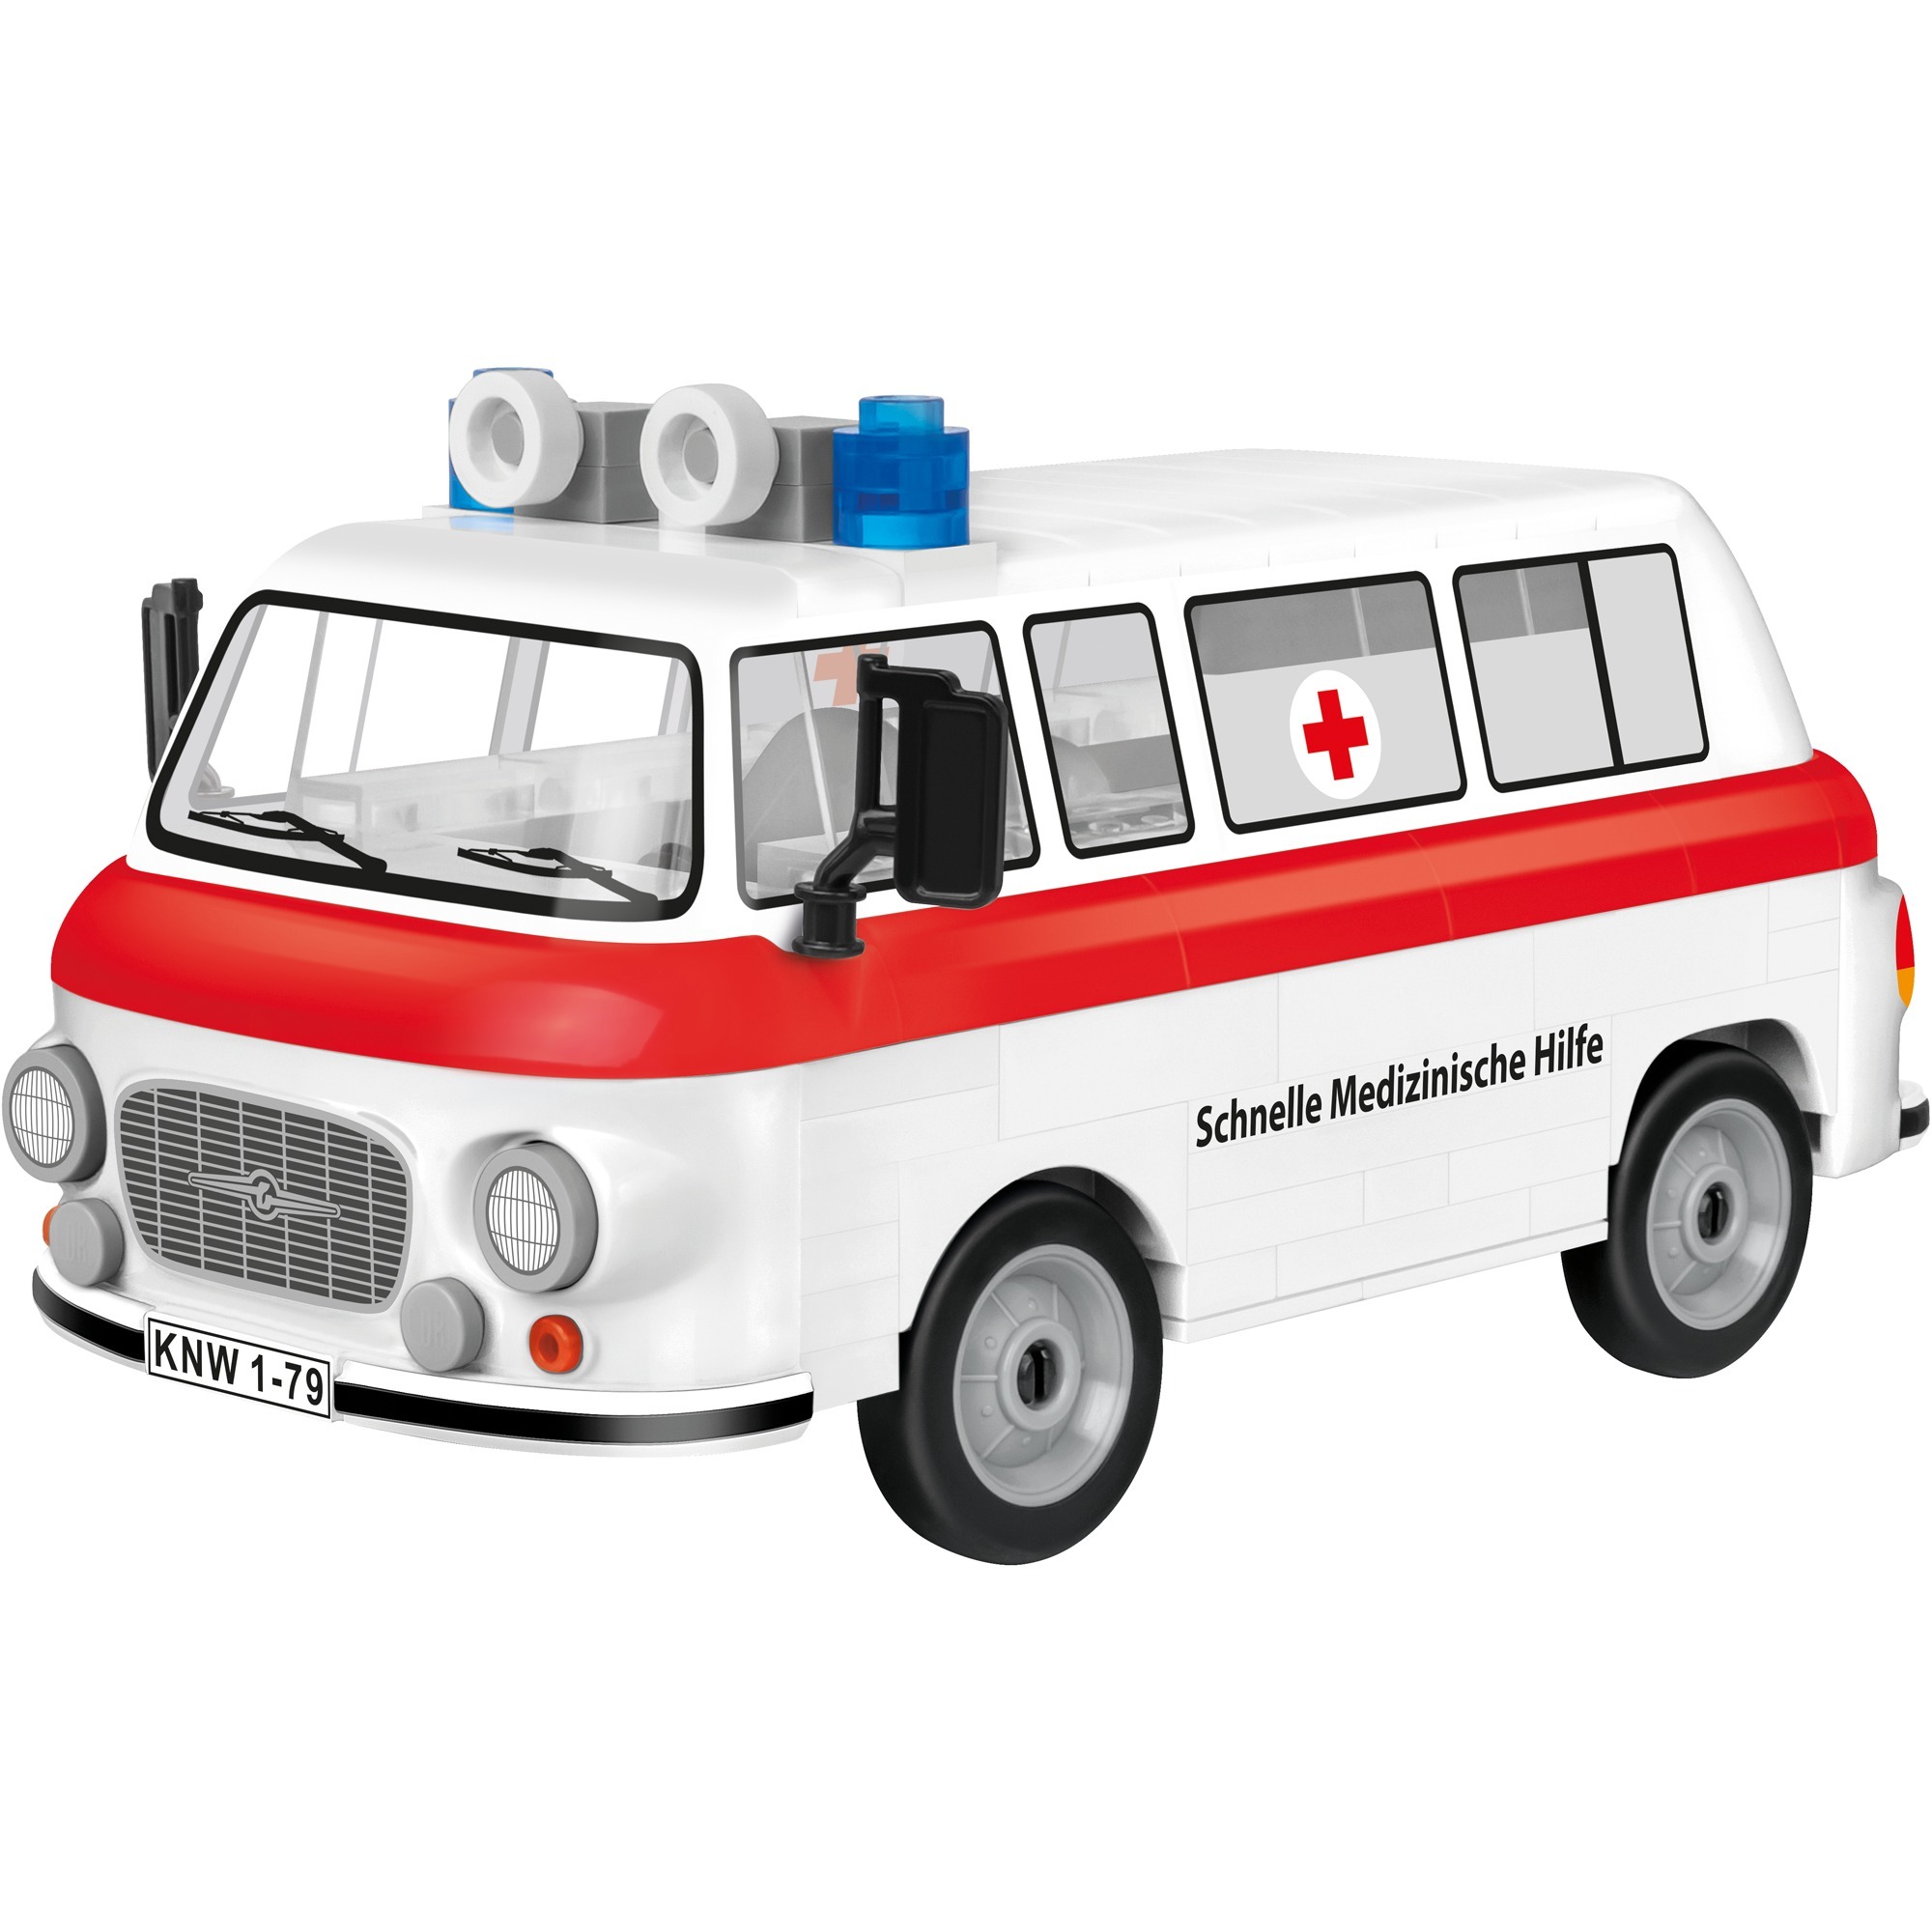 Image of Alternate - Youngtimer Barkas B1000 Krankenwagen, Konstruktionsspielzeug online einkaufen bei Alternate